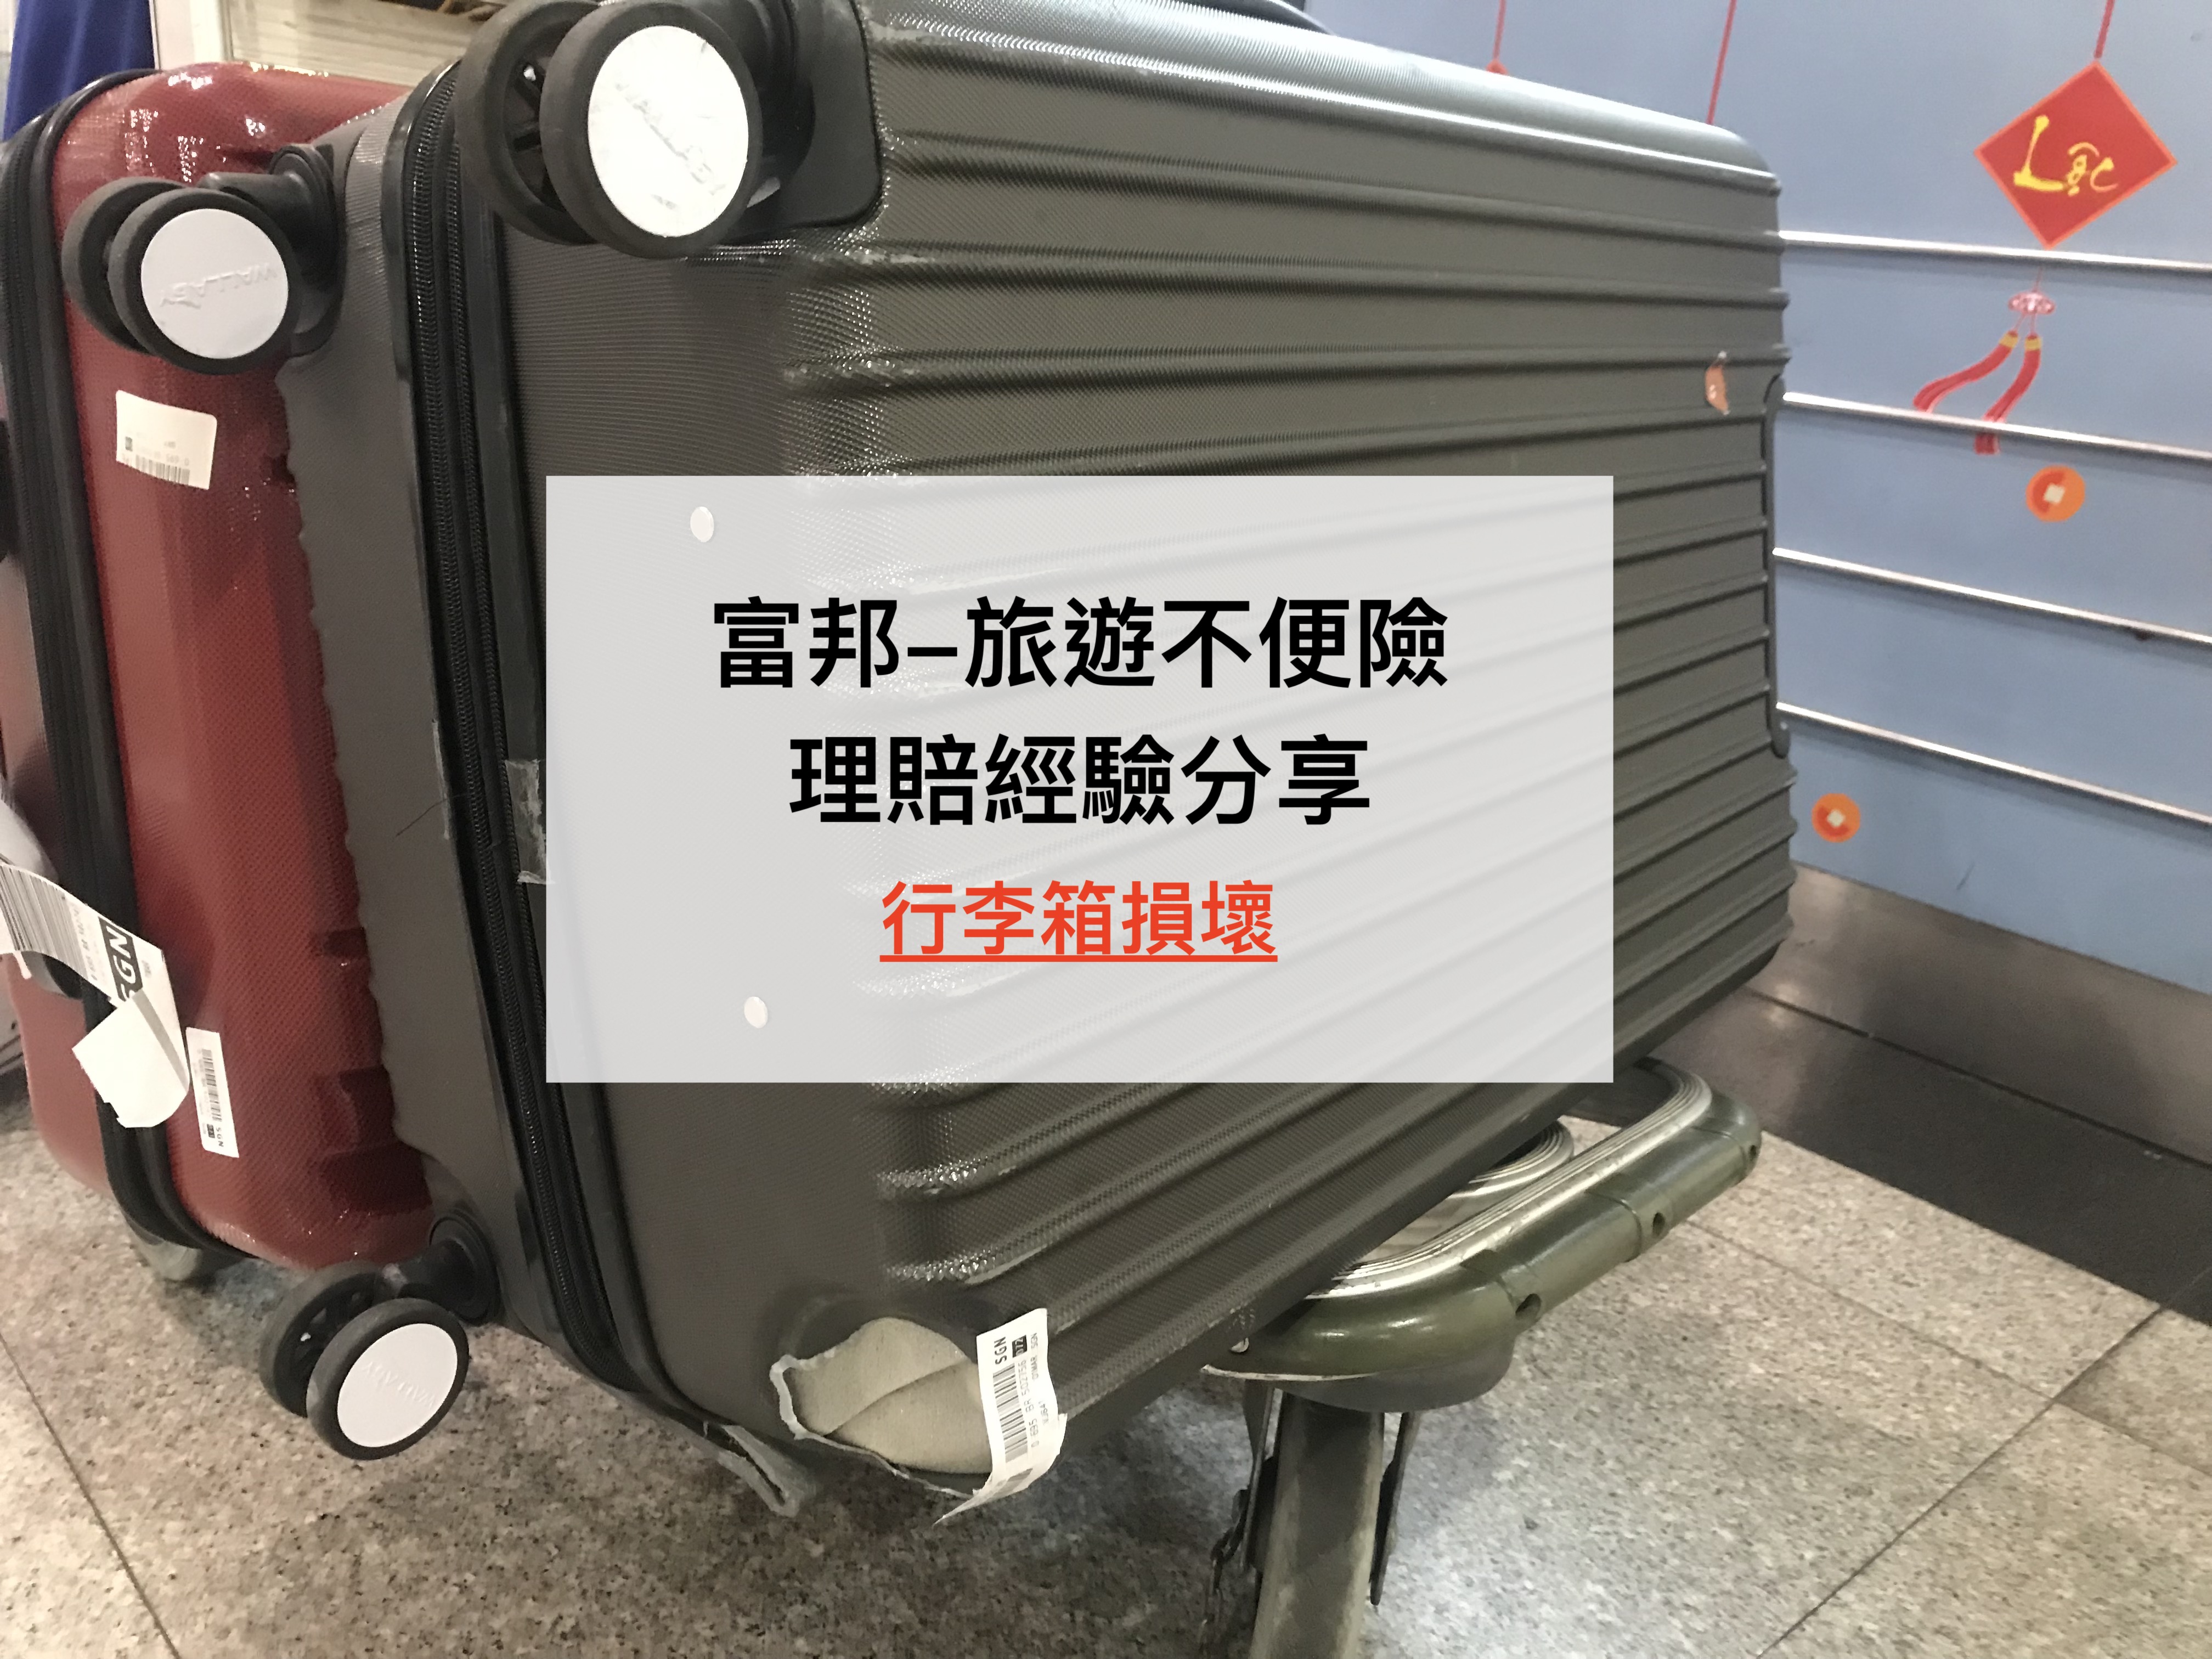 [保險-旅遊不便險] 行李箱被摔壞 之 富邦保險理賠分享